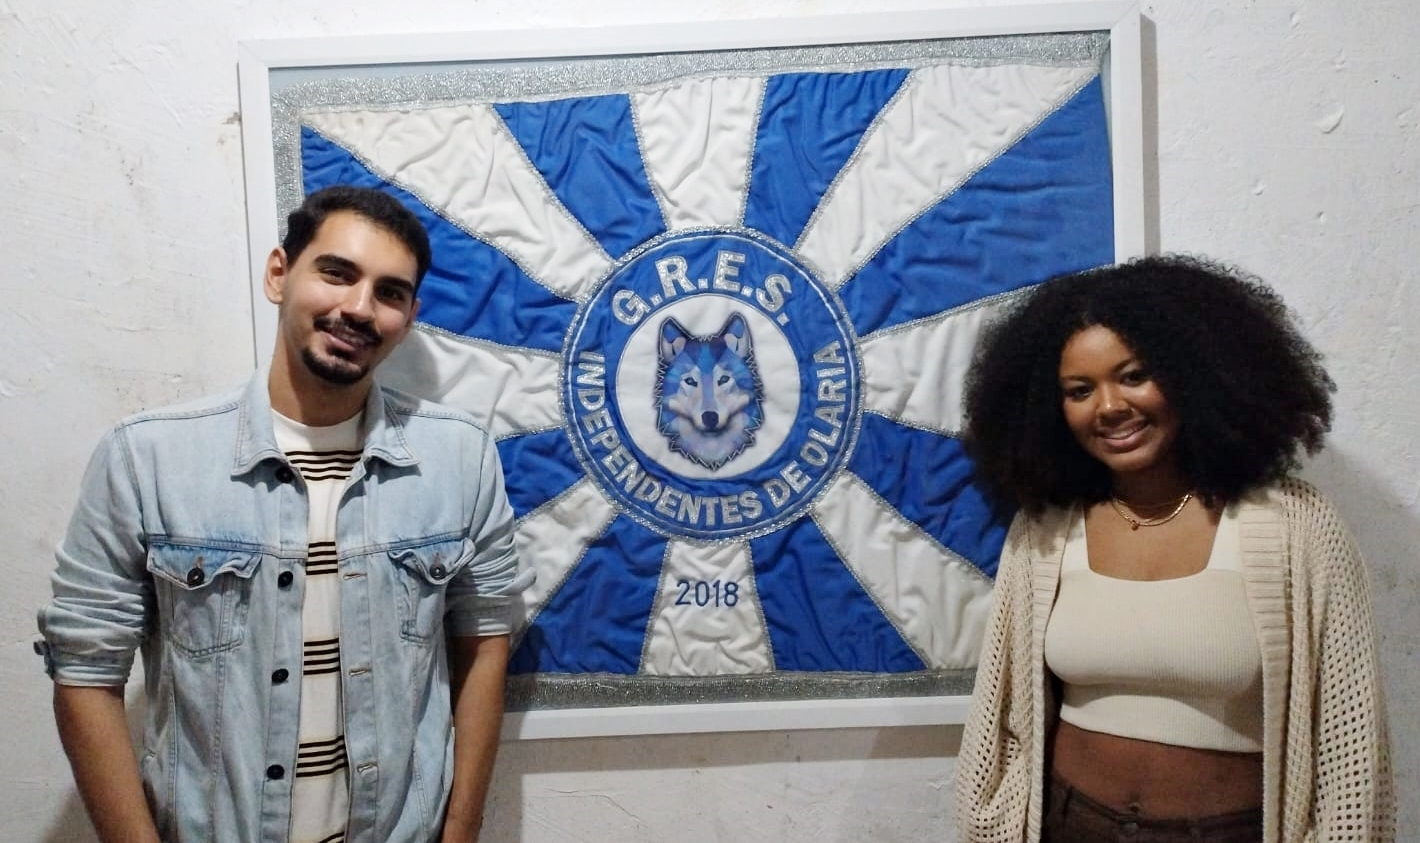 Ester Domingos e Ariel Portes são os novos carnavalescos da Independentes de Olaria